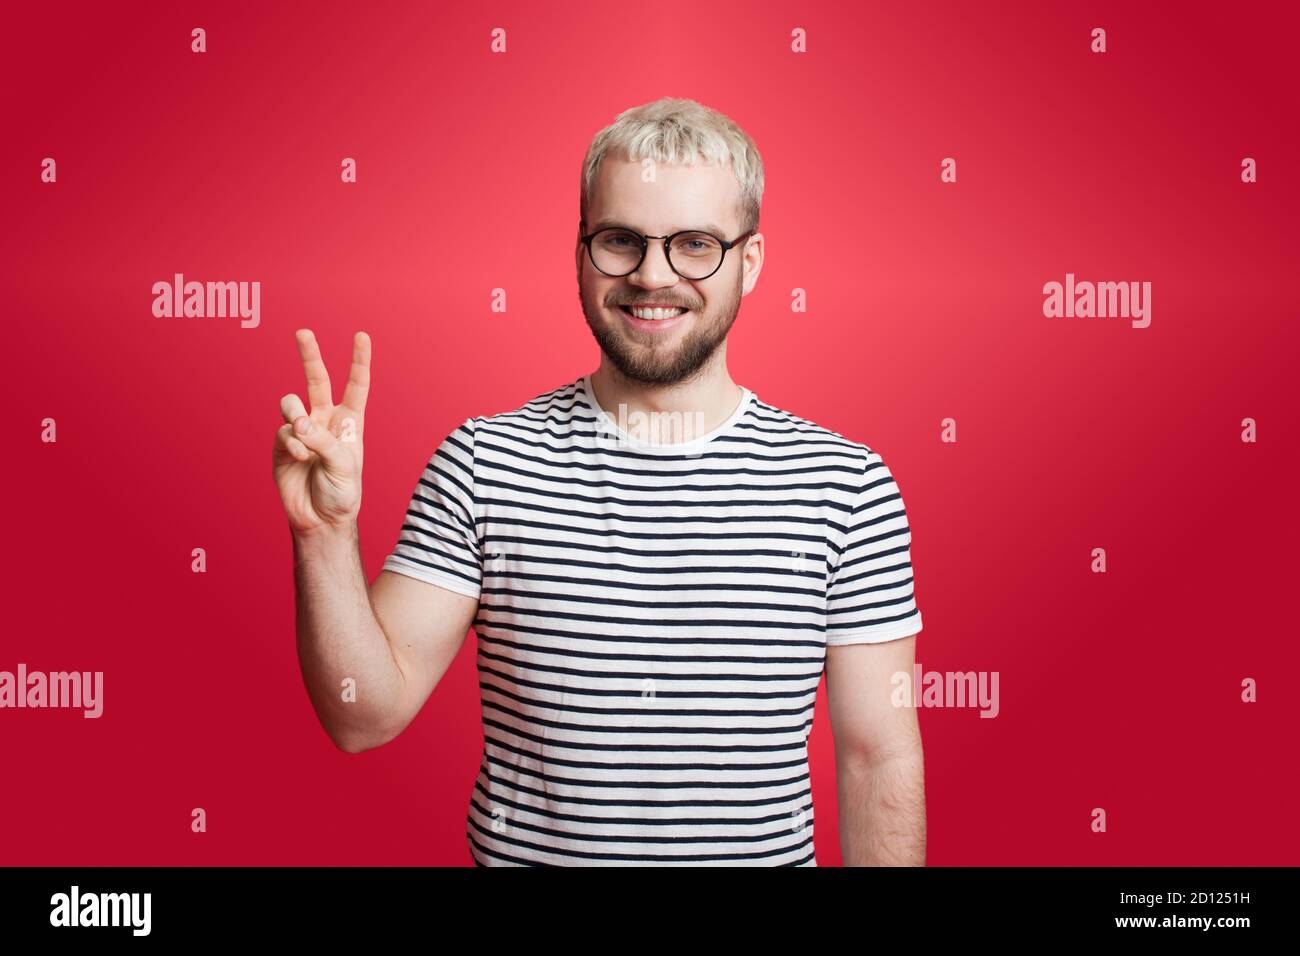 L'uomo caucasico con i capelli biondi e la barba è gesturing il cartello di pace su una parete rossa che sorride alla fotocamera Foto Stock